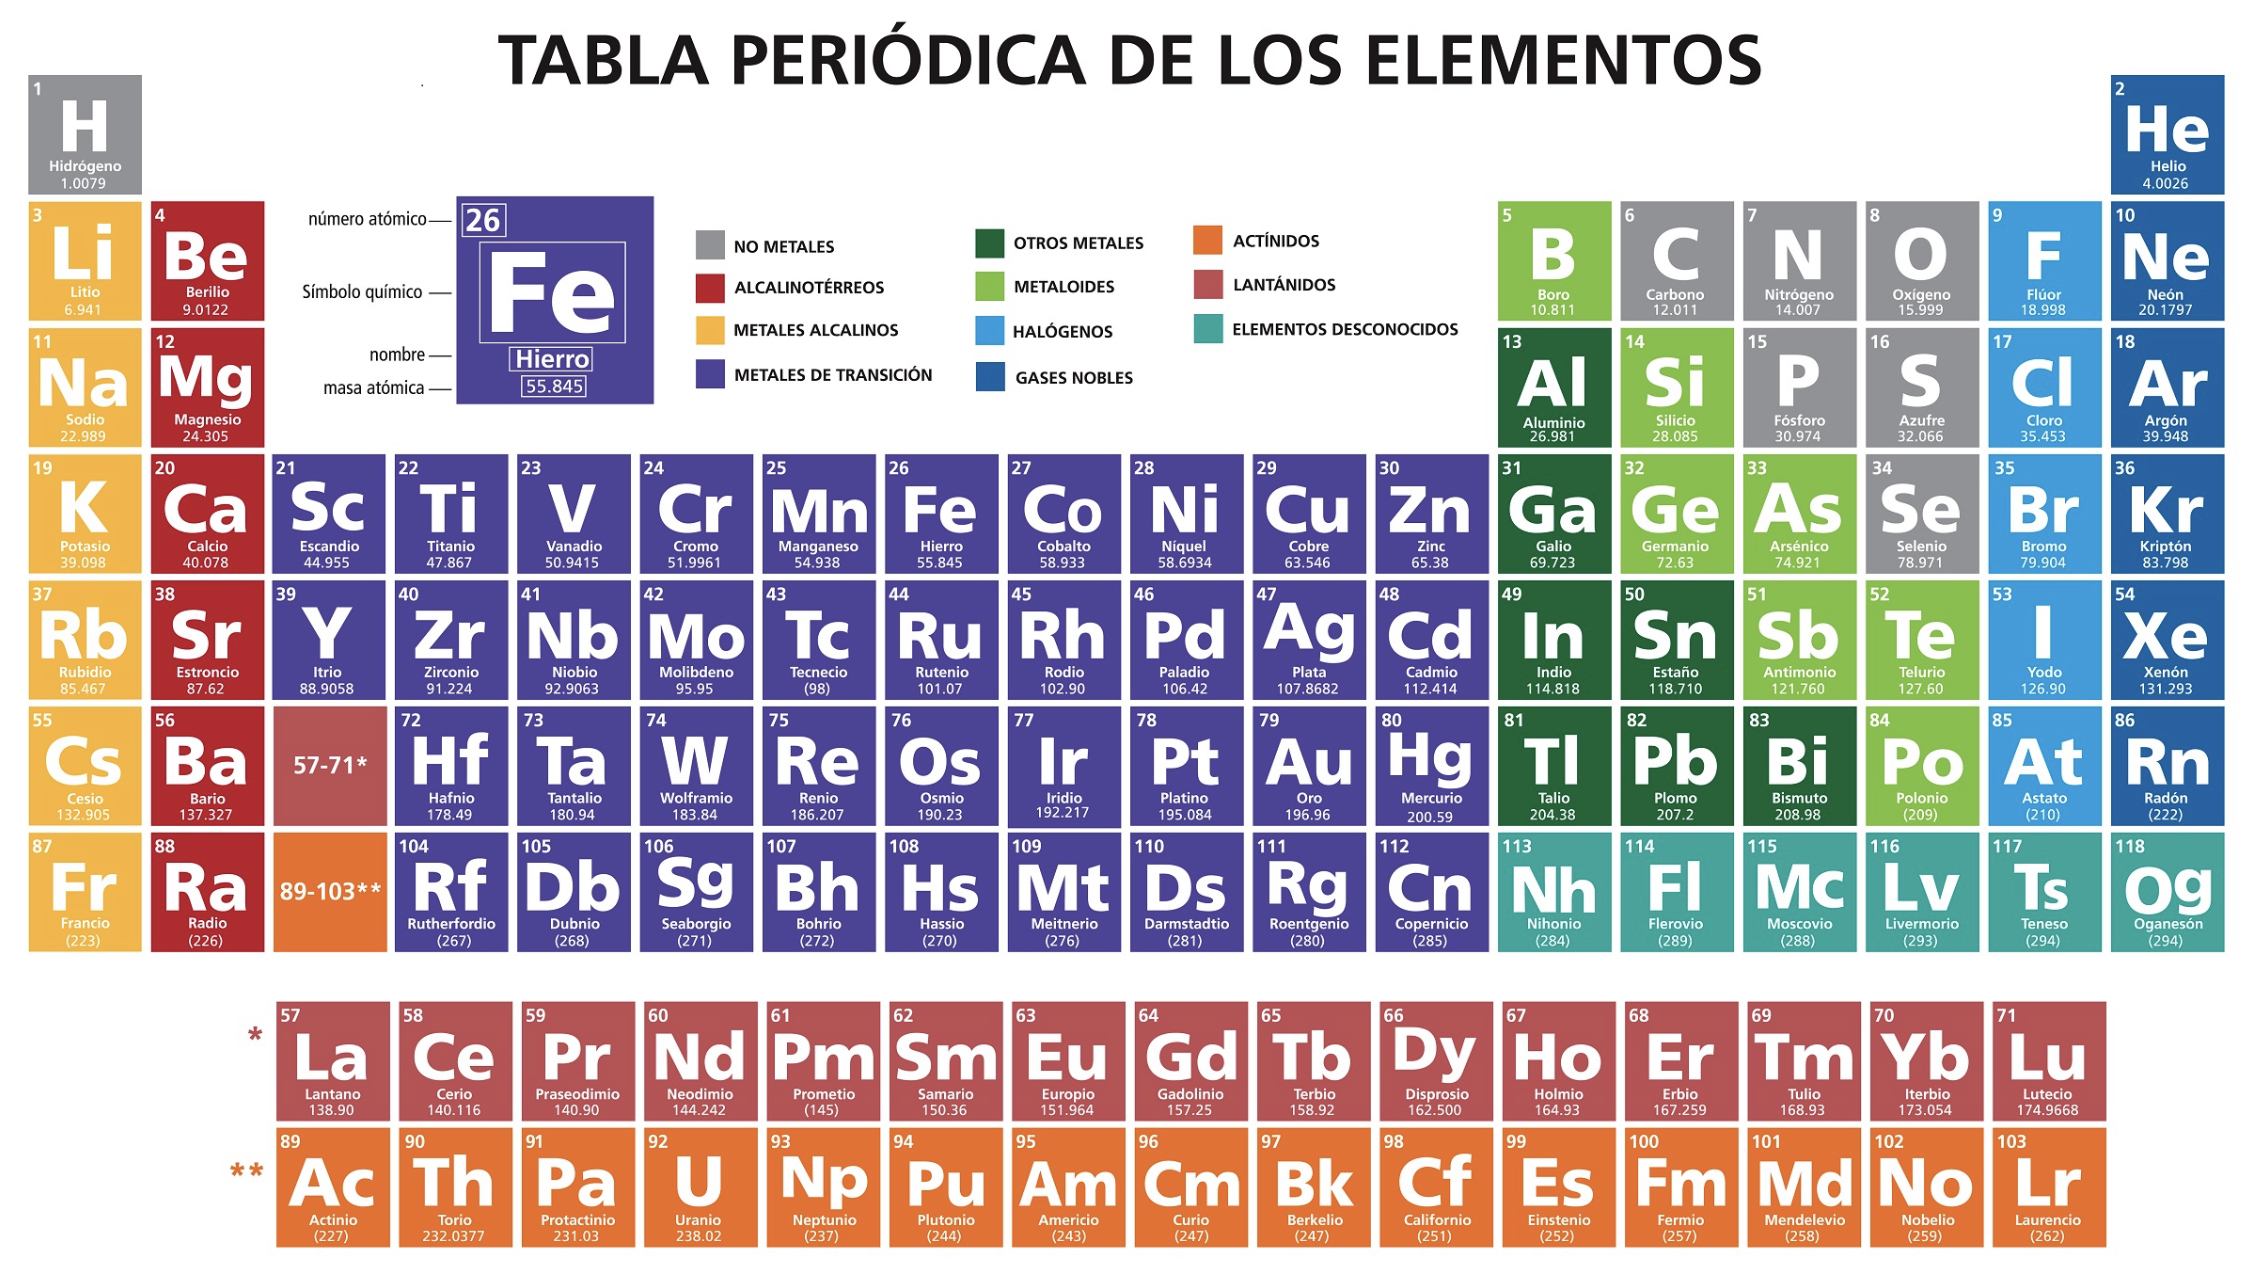 <p>Son una clasificación de elementos no metales encontrados en la tabla periódica (del flúor al astato)</p>